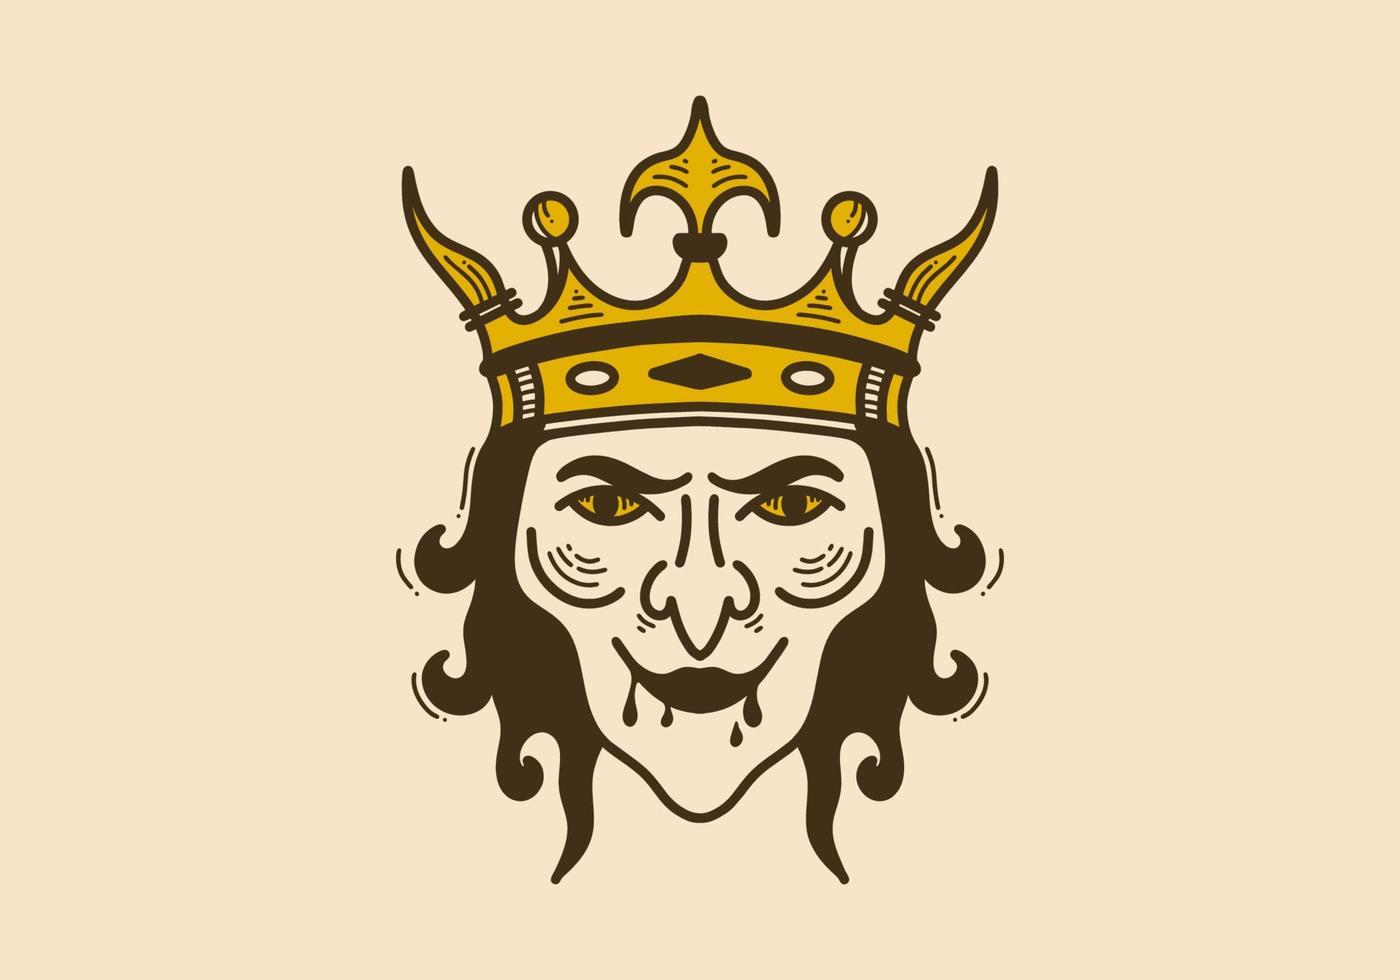 ilustración vintage de una bruja con corona de rey vector